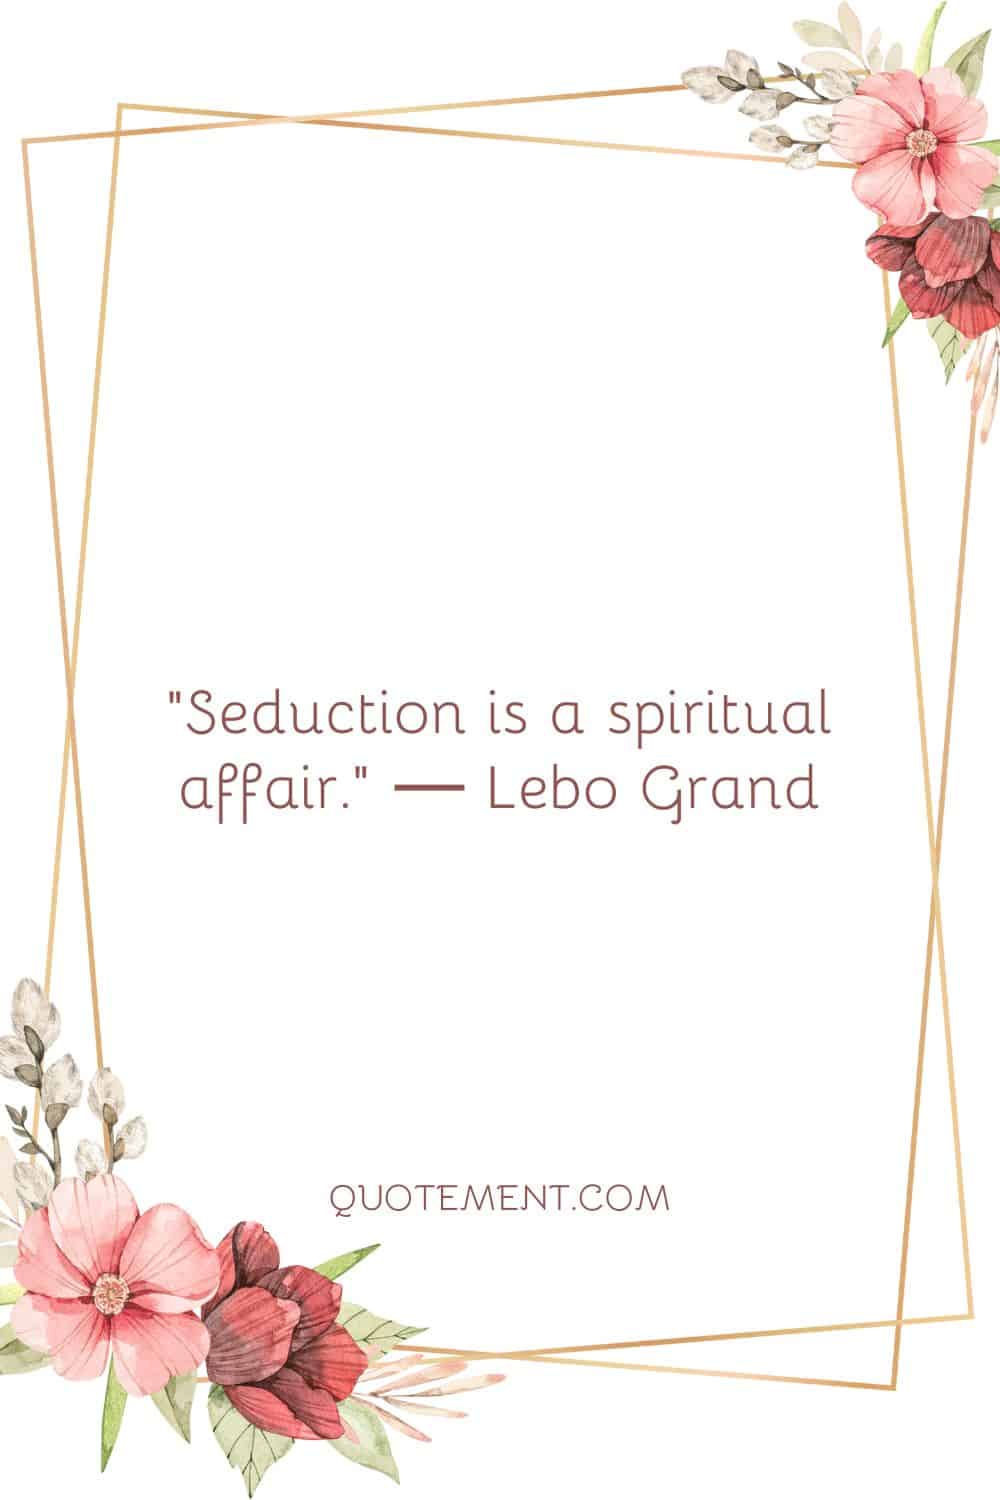 Seduction is a spiritual affair.